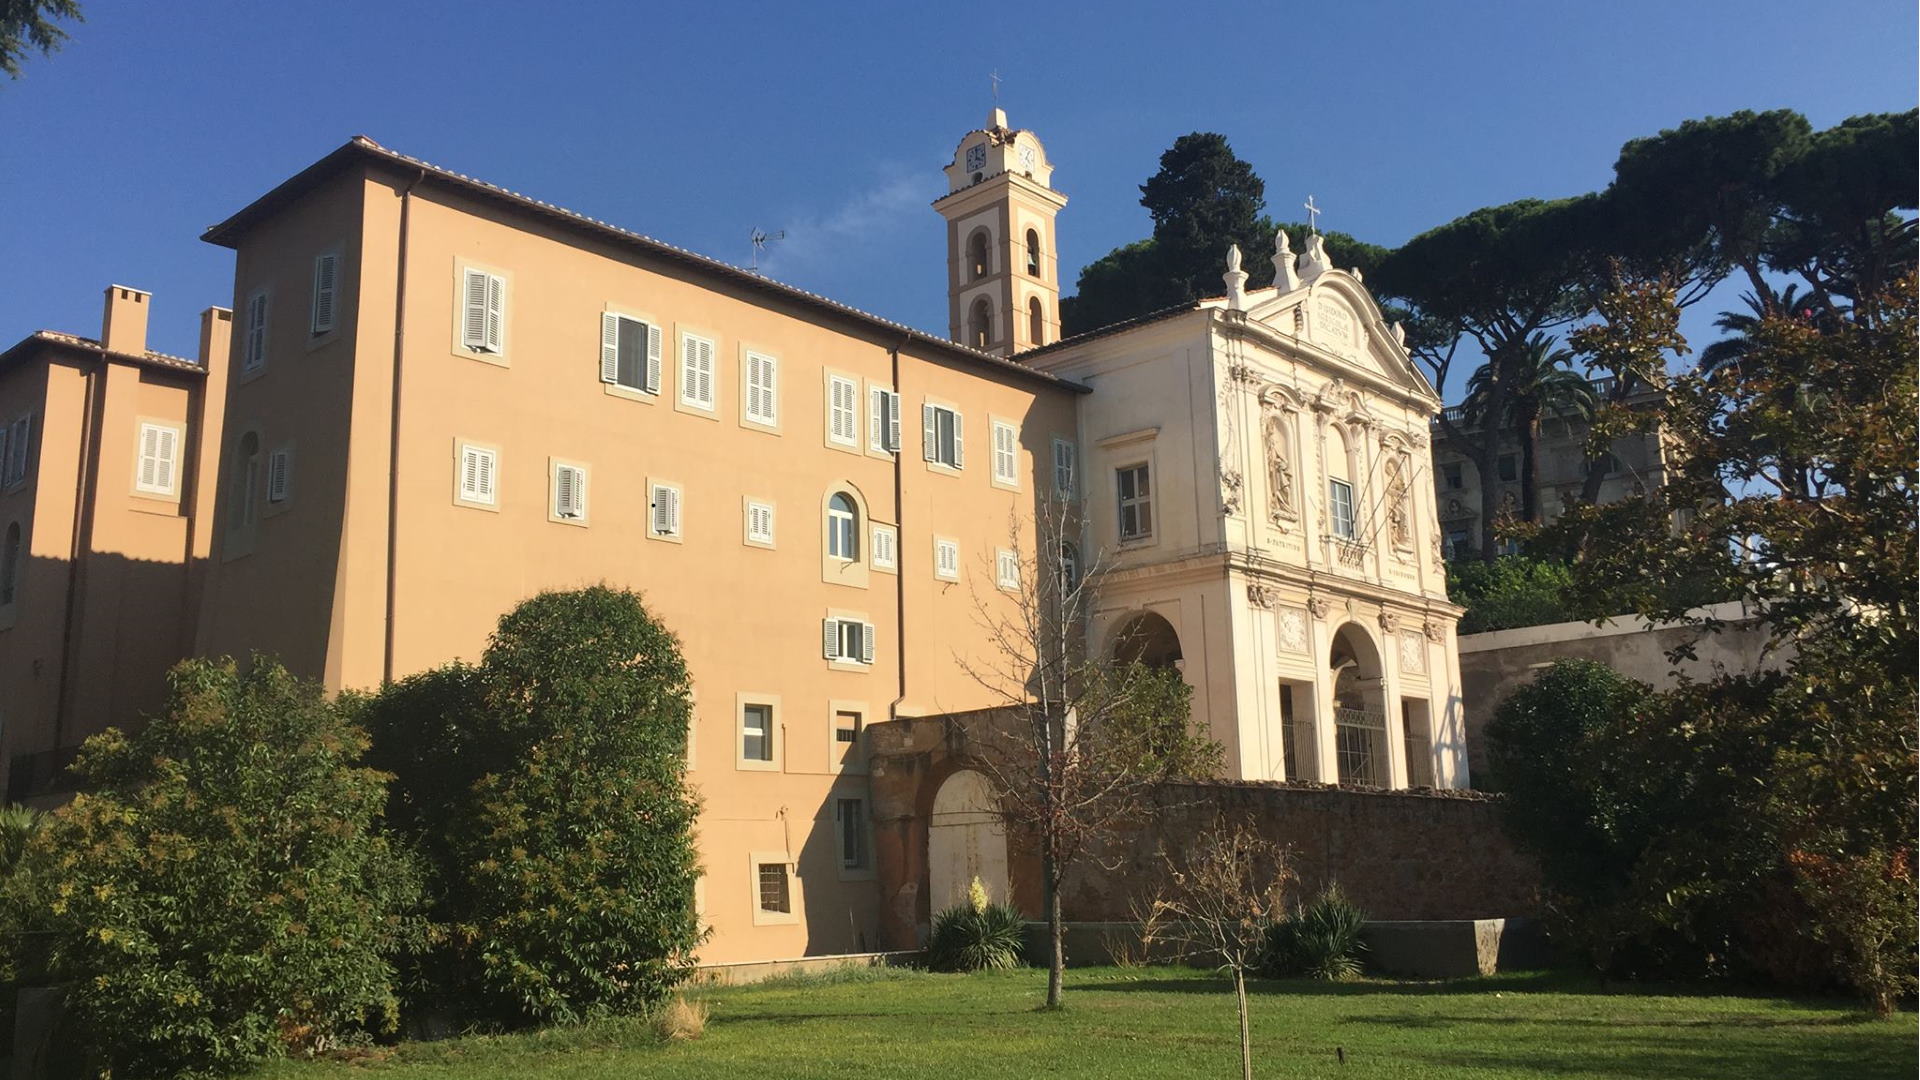 Foto profilo ufficiale Facebook Saint Isidore's College, Rome